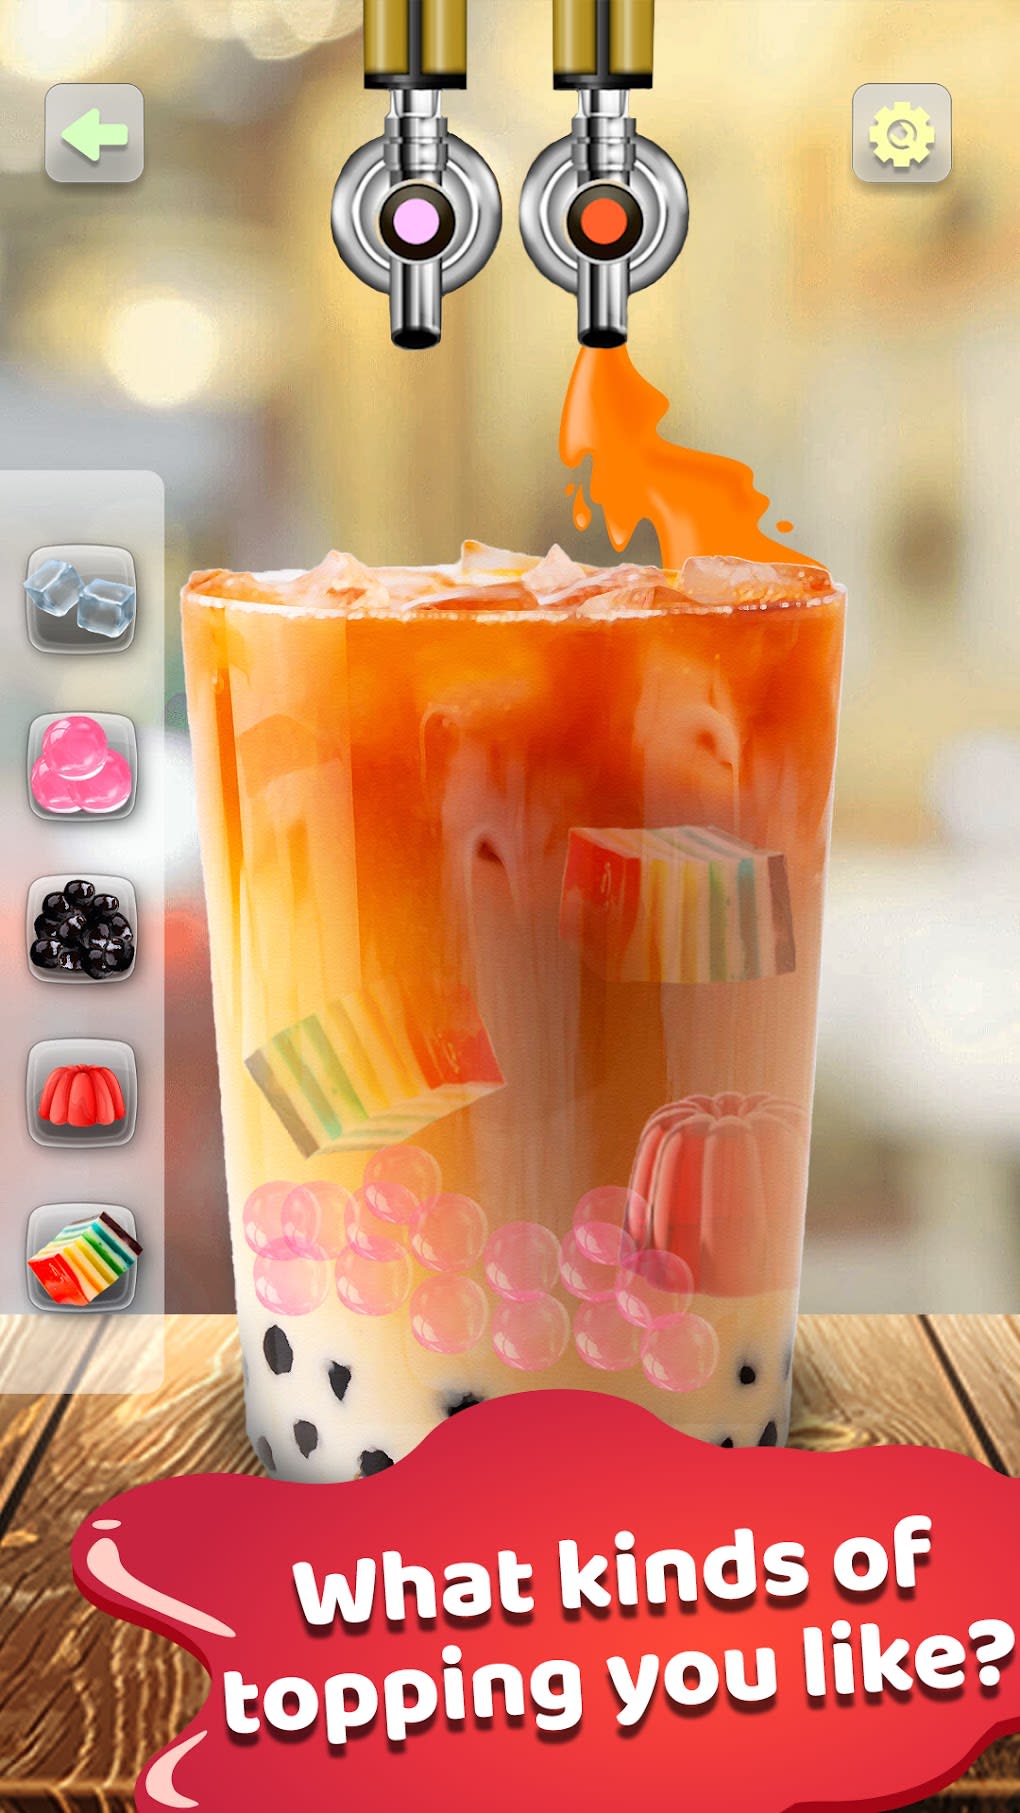 Boba Recipe: DIY Bubble Tea – Apps no Google Play